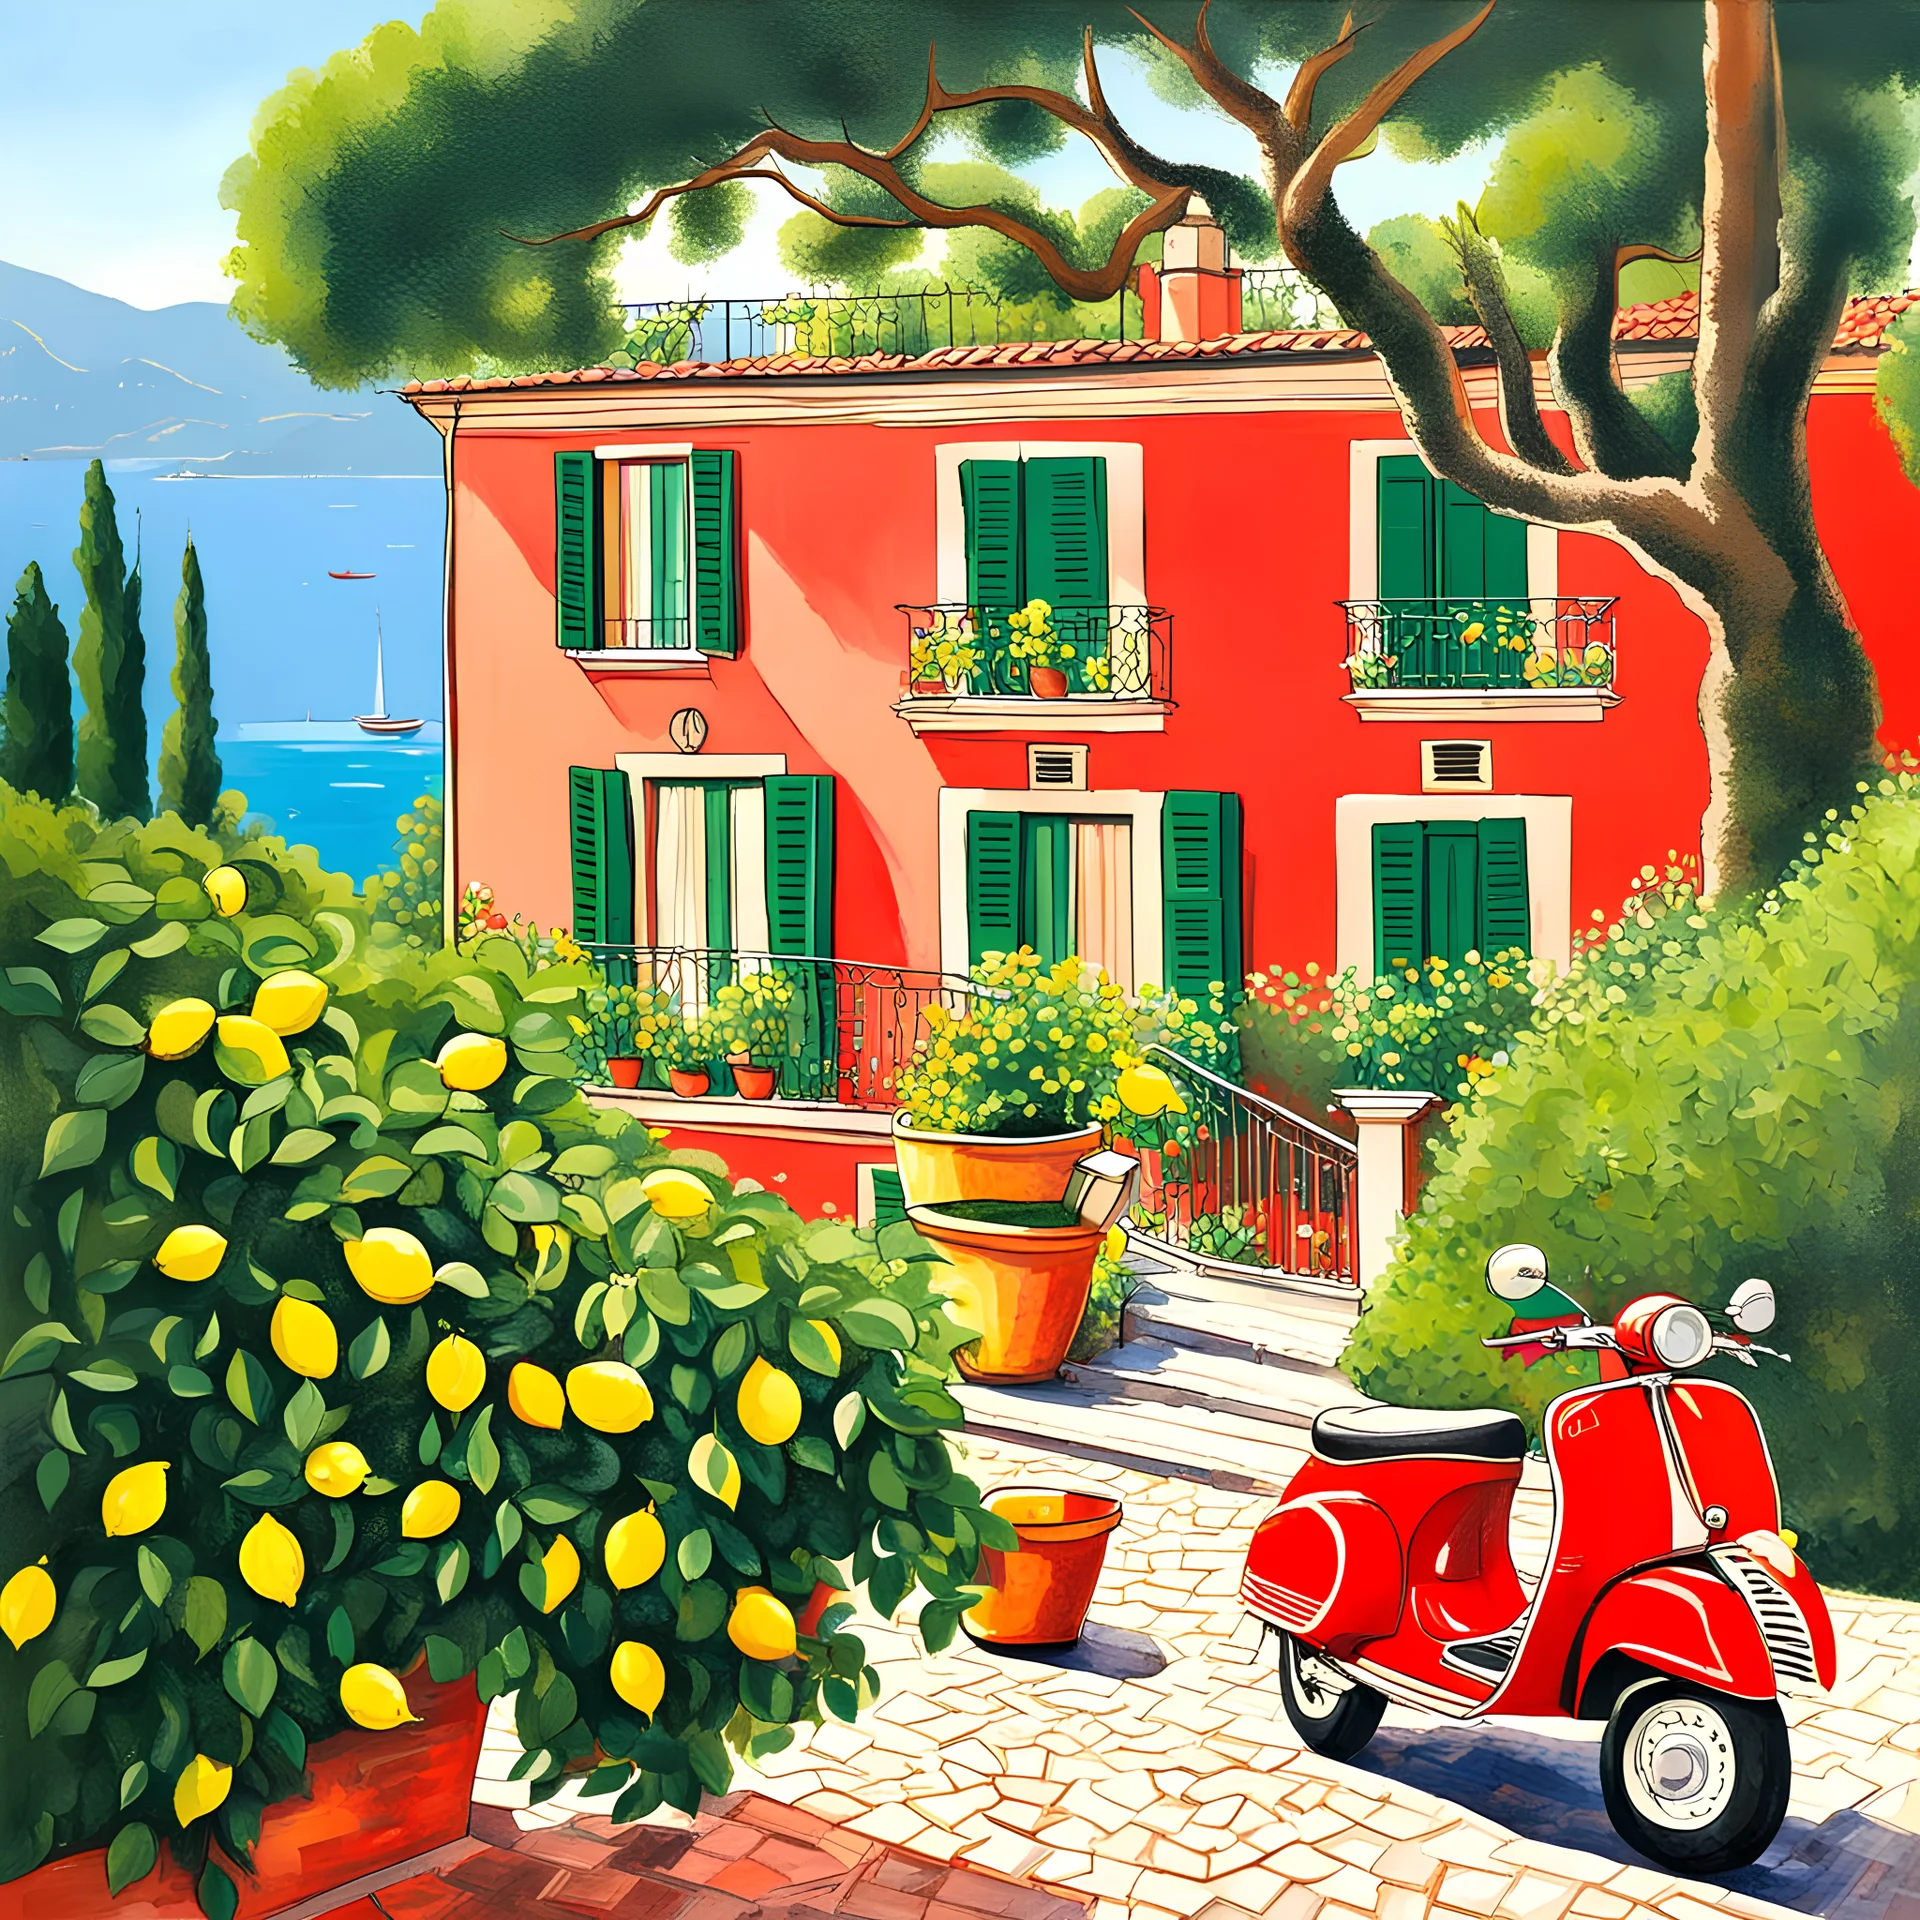 Italian villa in Portofino with lemon tree with sea view and a Red vespa